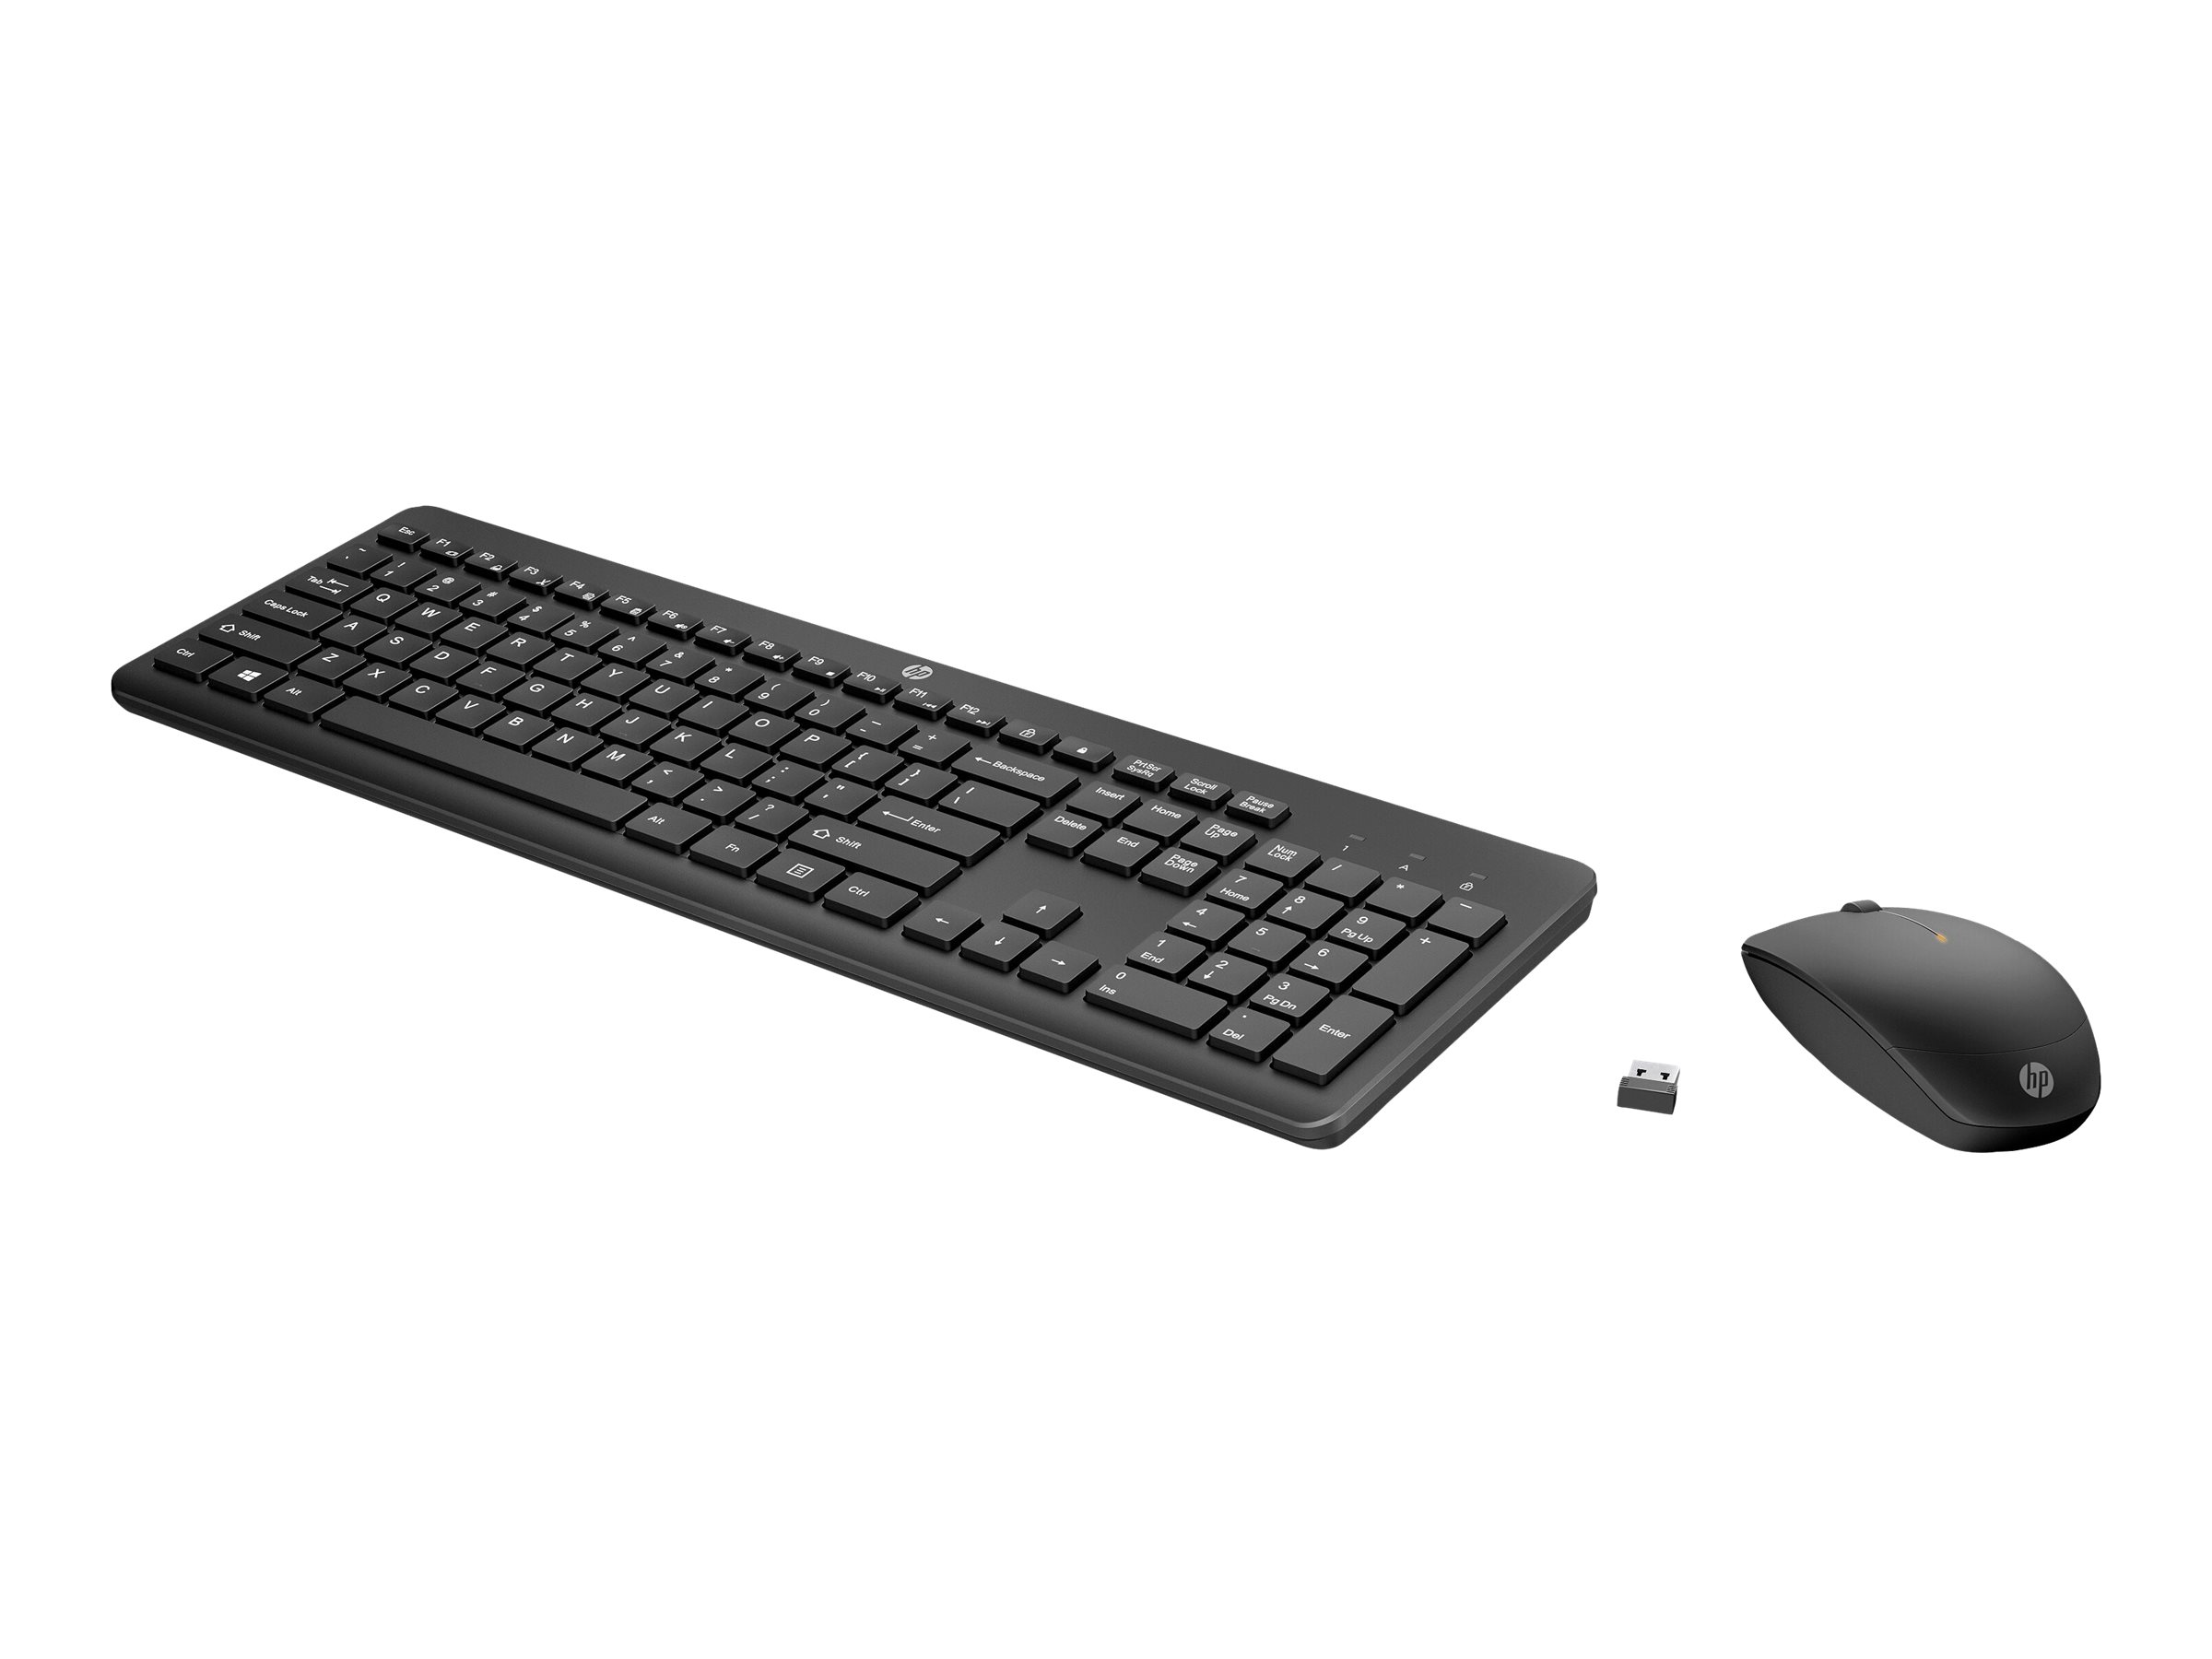 koppel laser pellet HP 235 - Keyboard and mouse set | punchout.shi.com